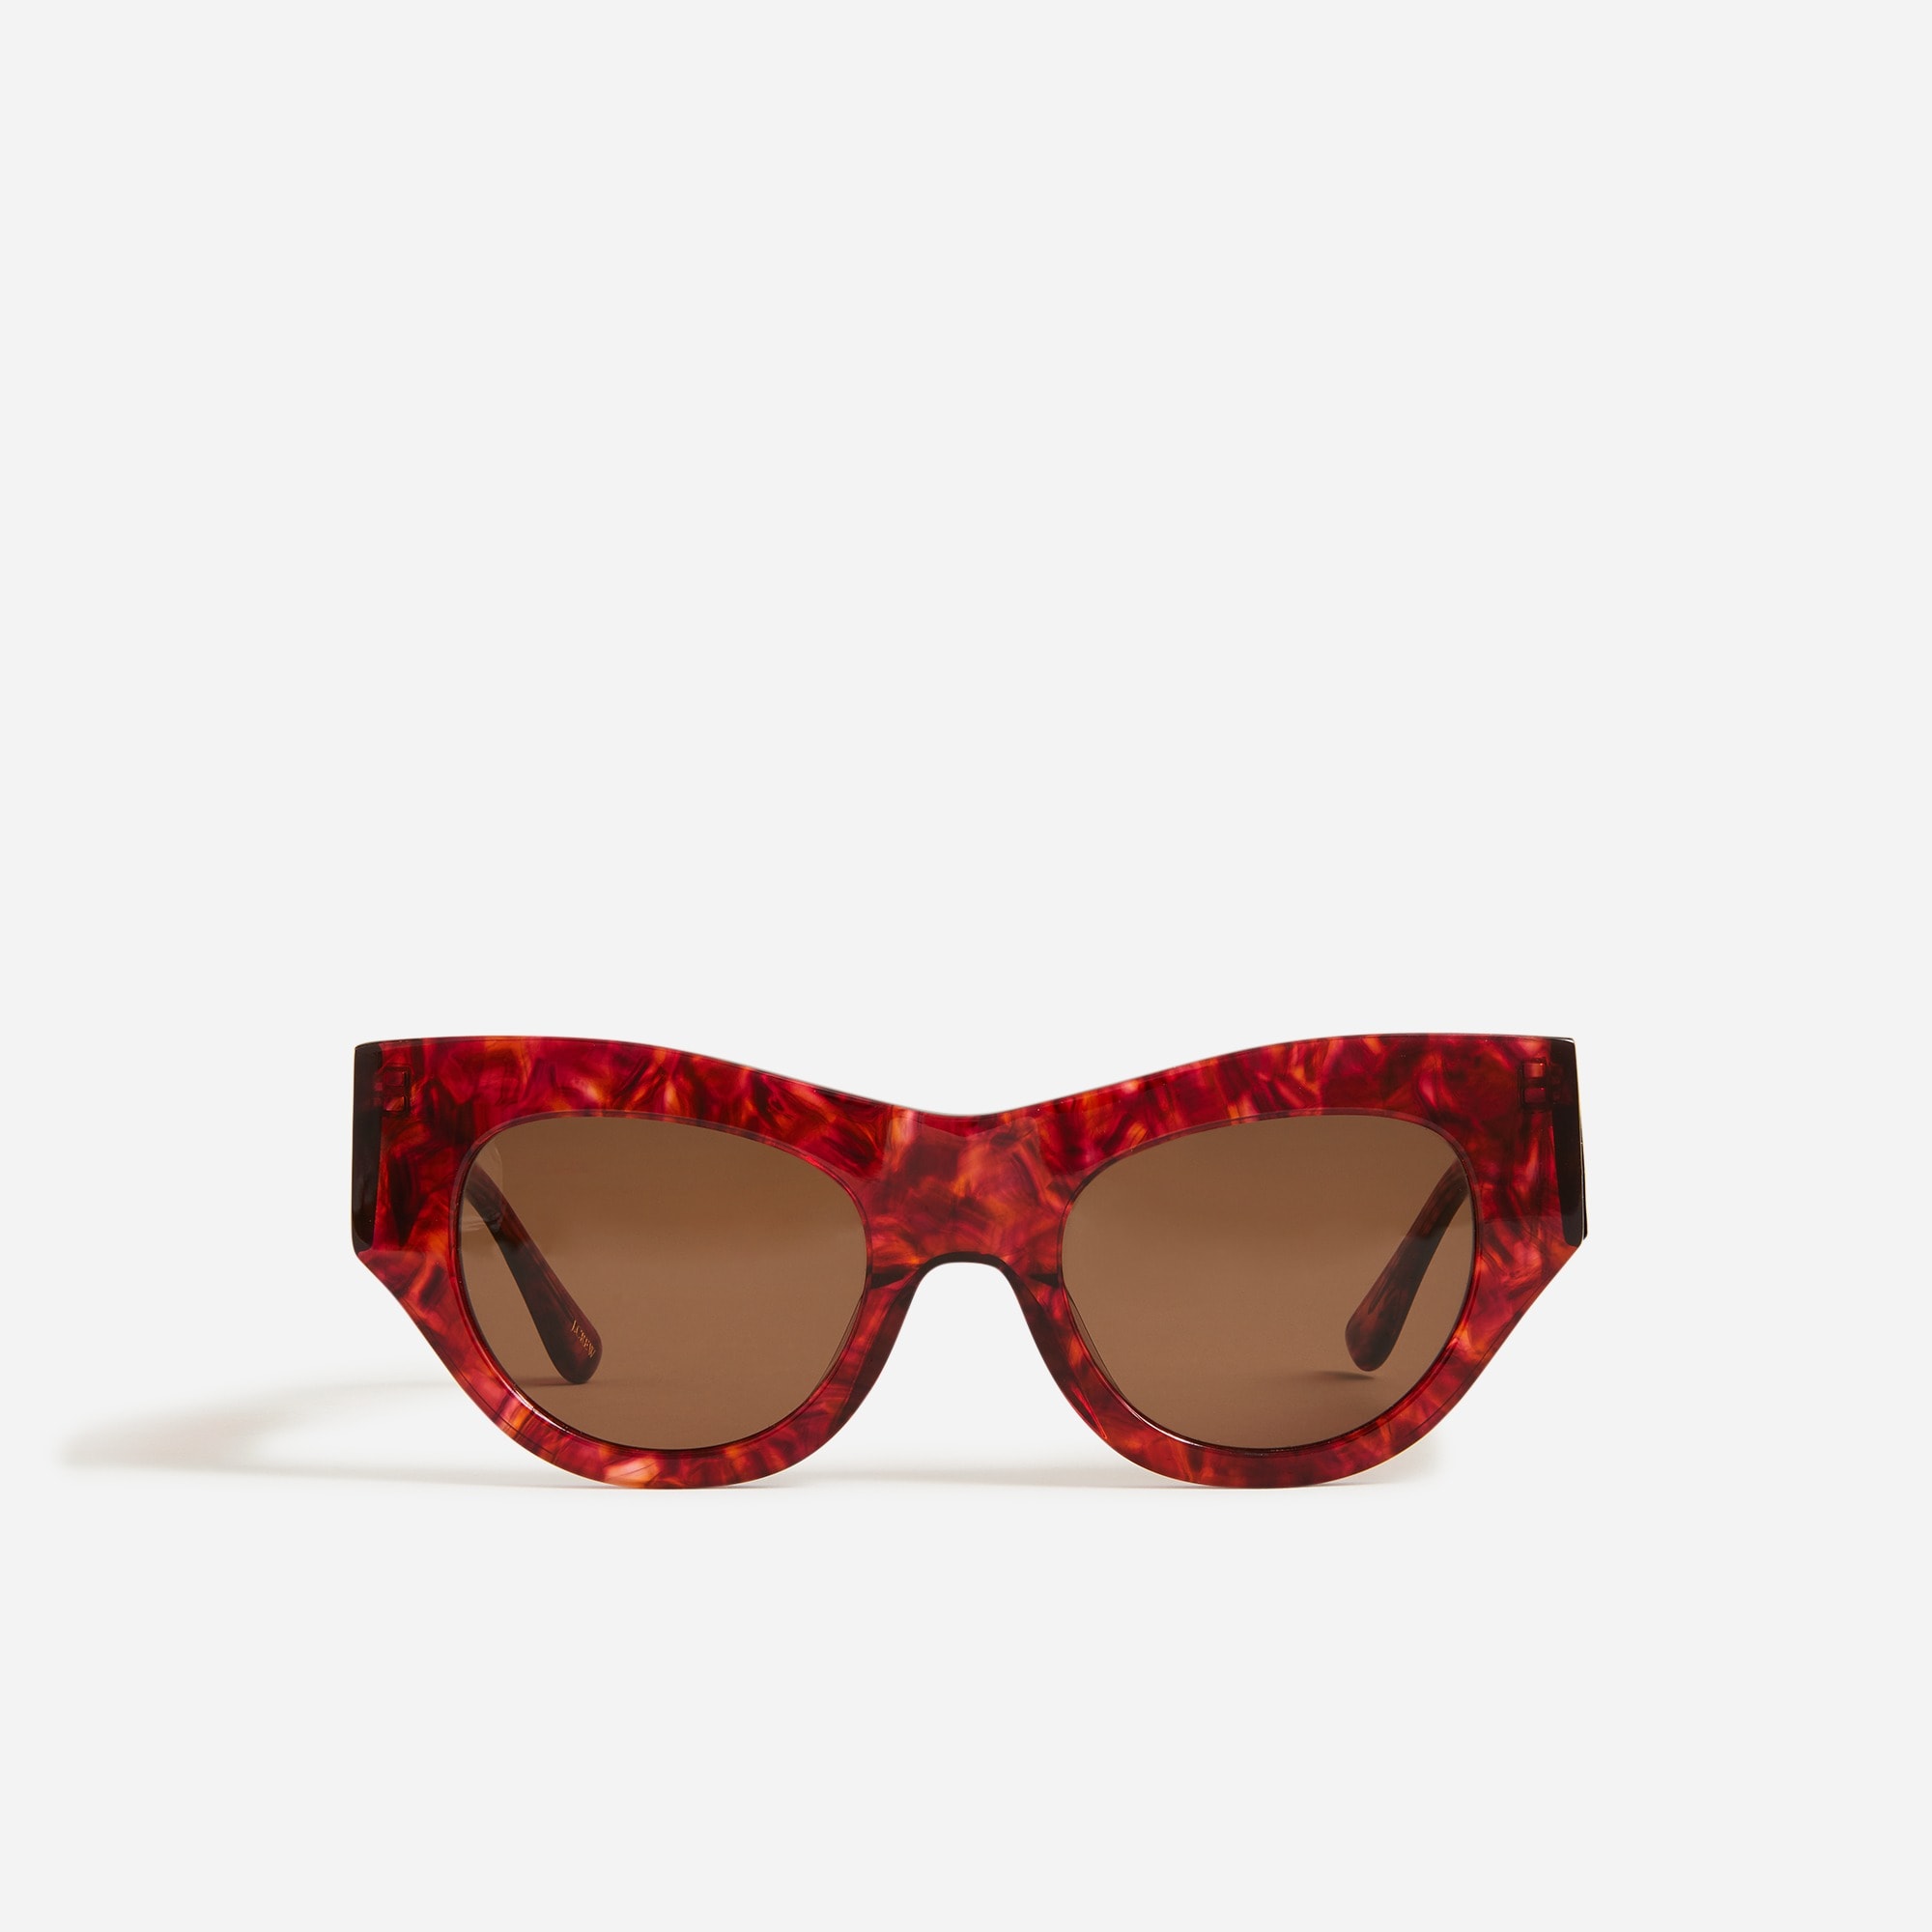  Venezia cat-eye sunglasses